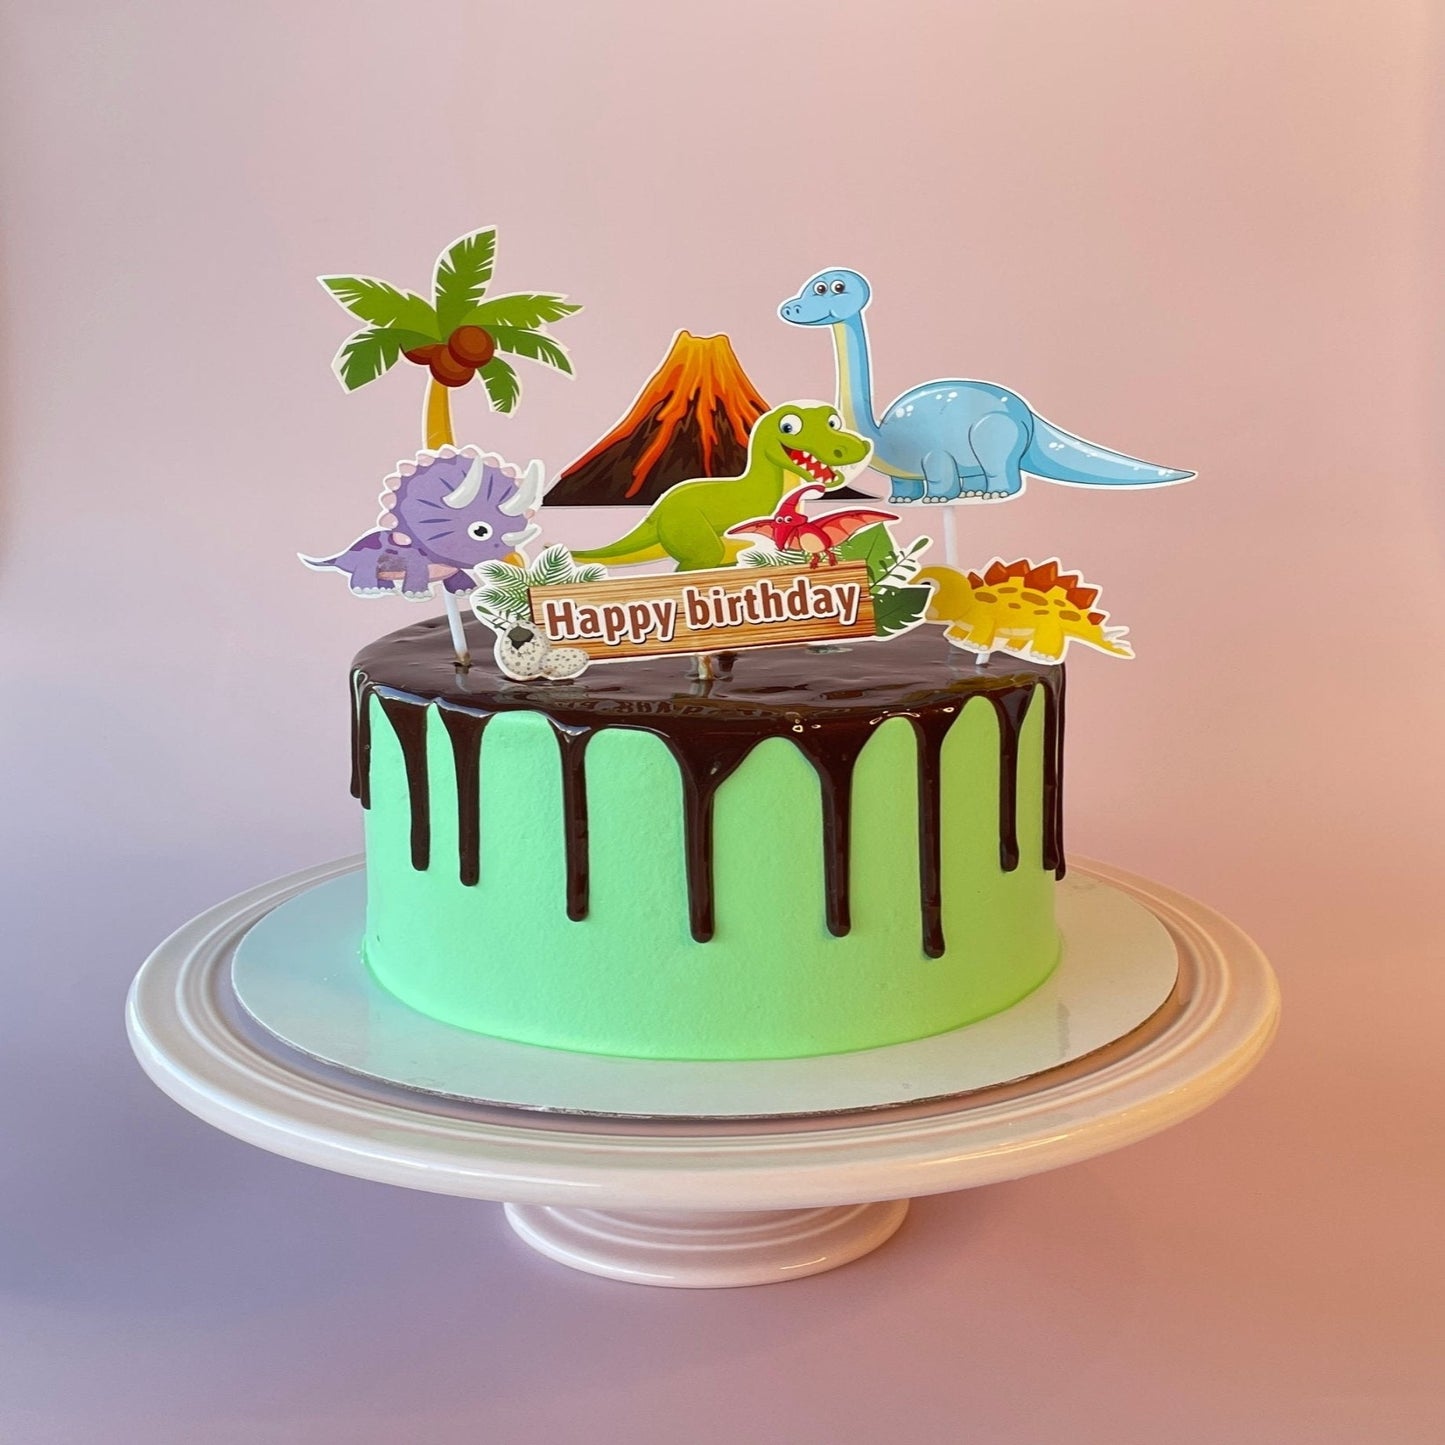 Dinosaur Cake – The Cake People